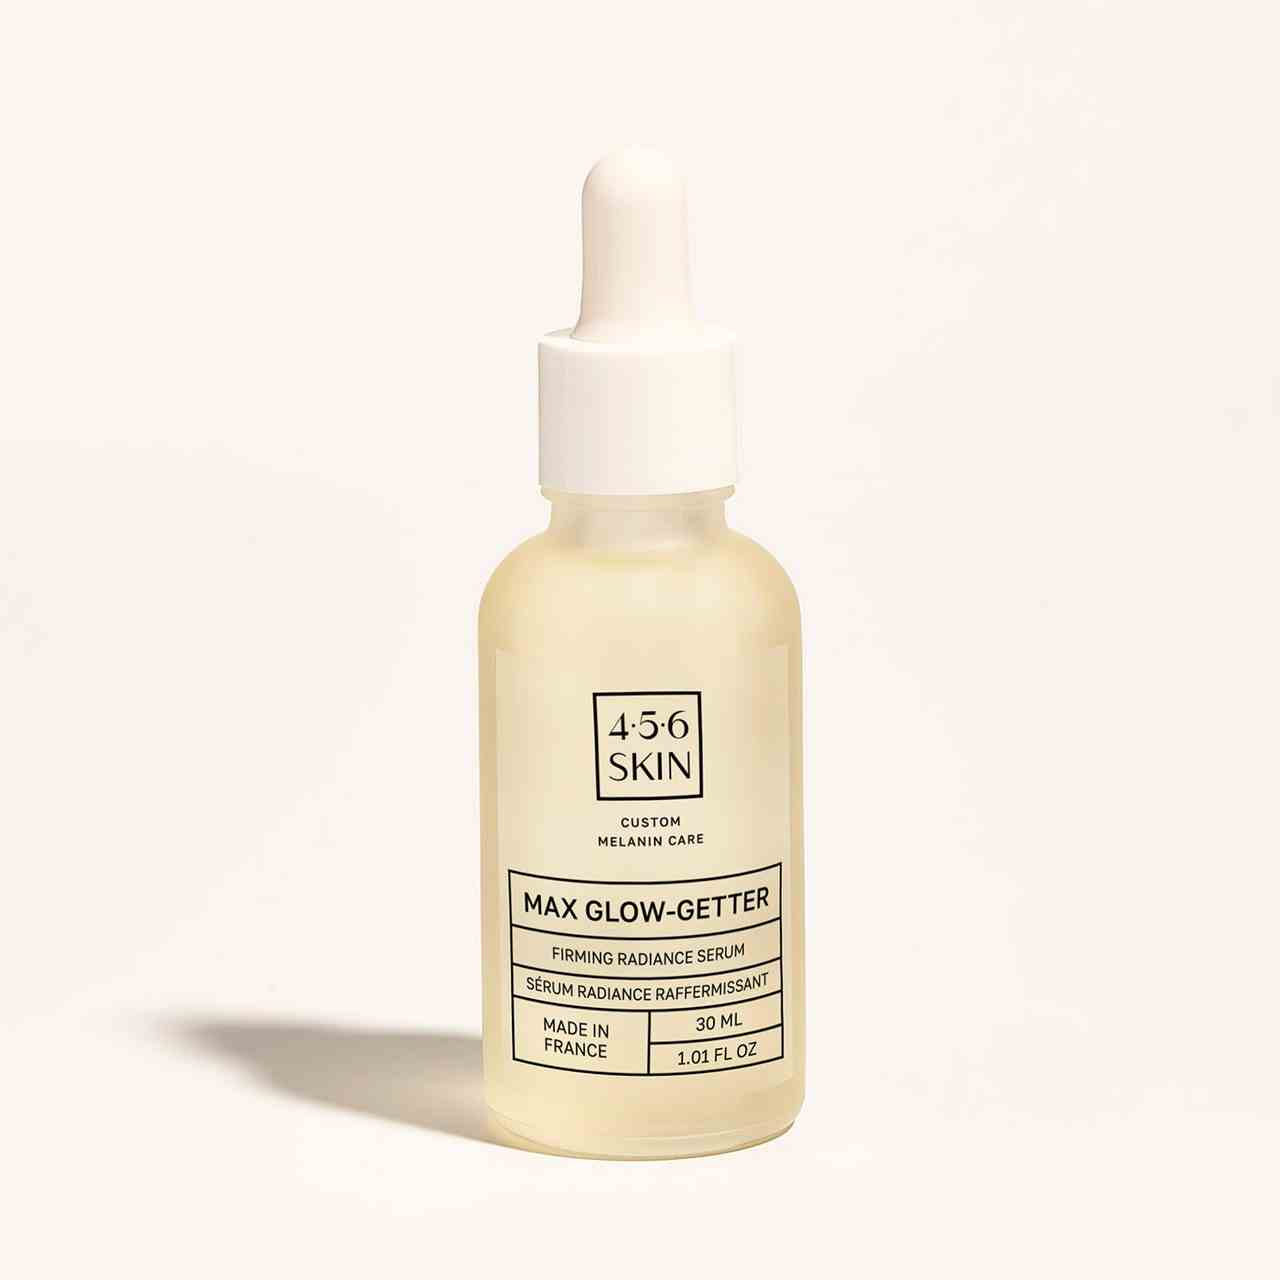 4.5.6 Skin Max Glow-Getter Firming Radiance Serum hellgelbe Serumflasche auf grauweißem Hintergrund